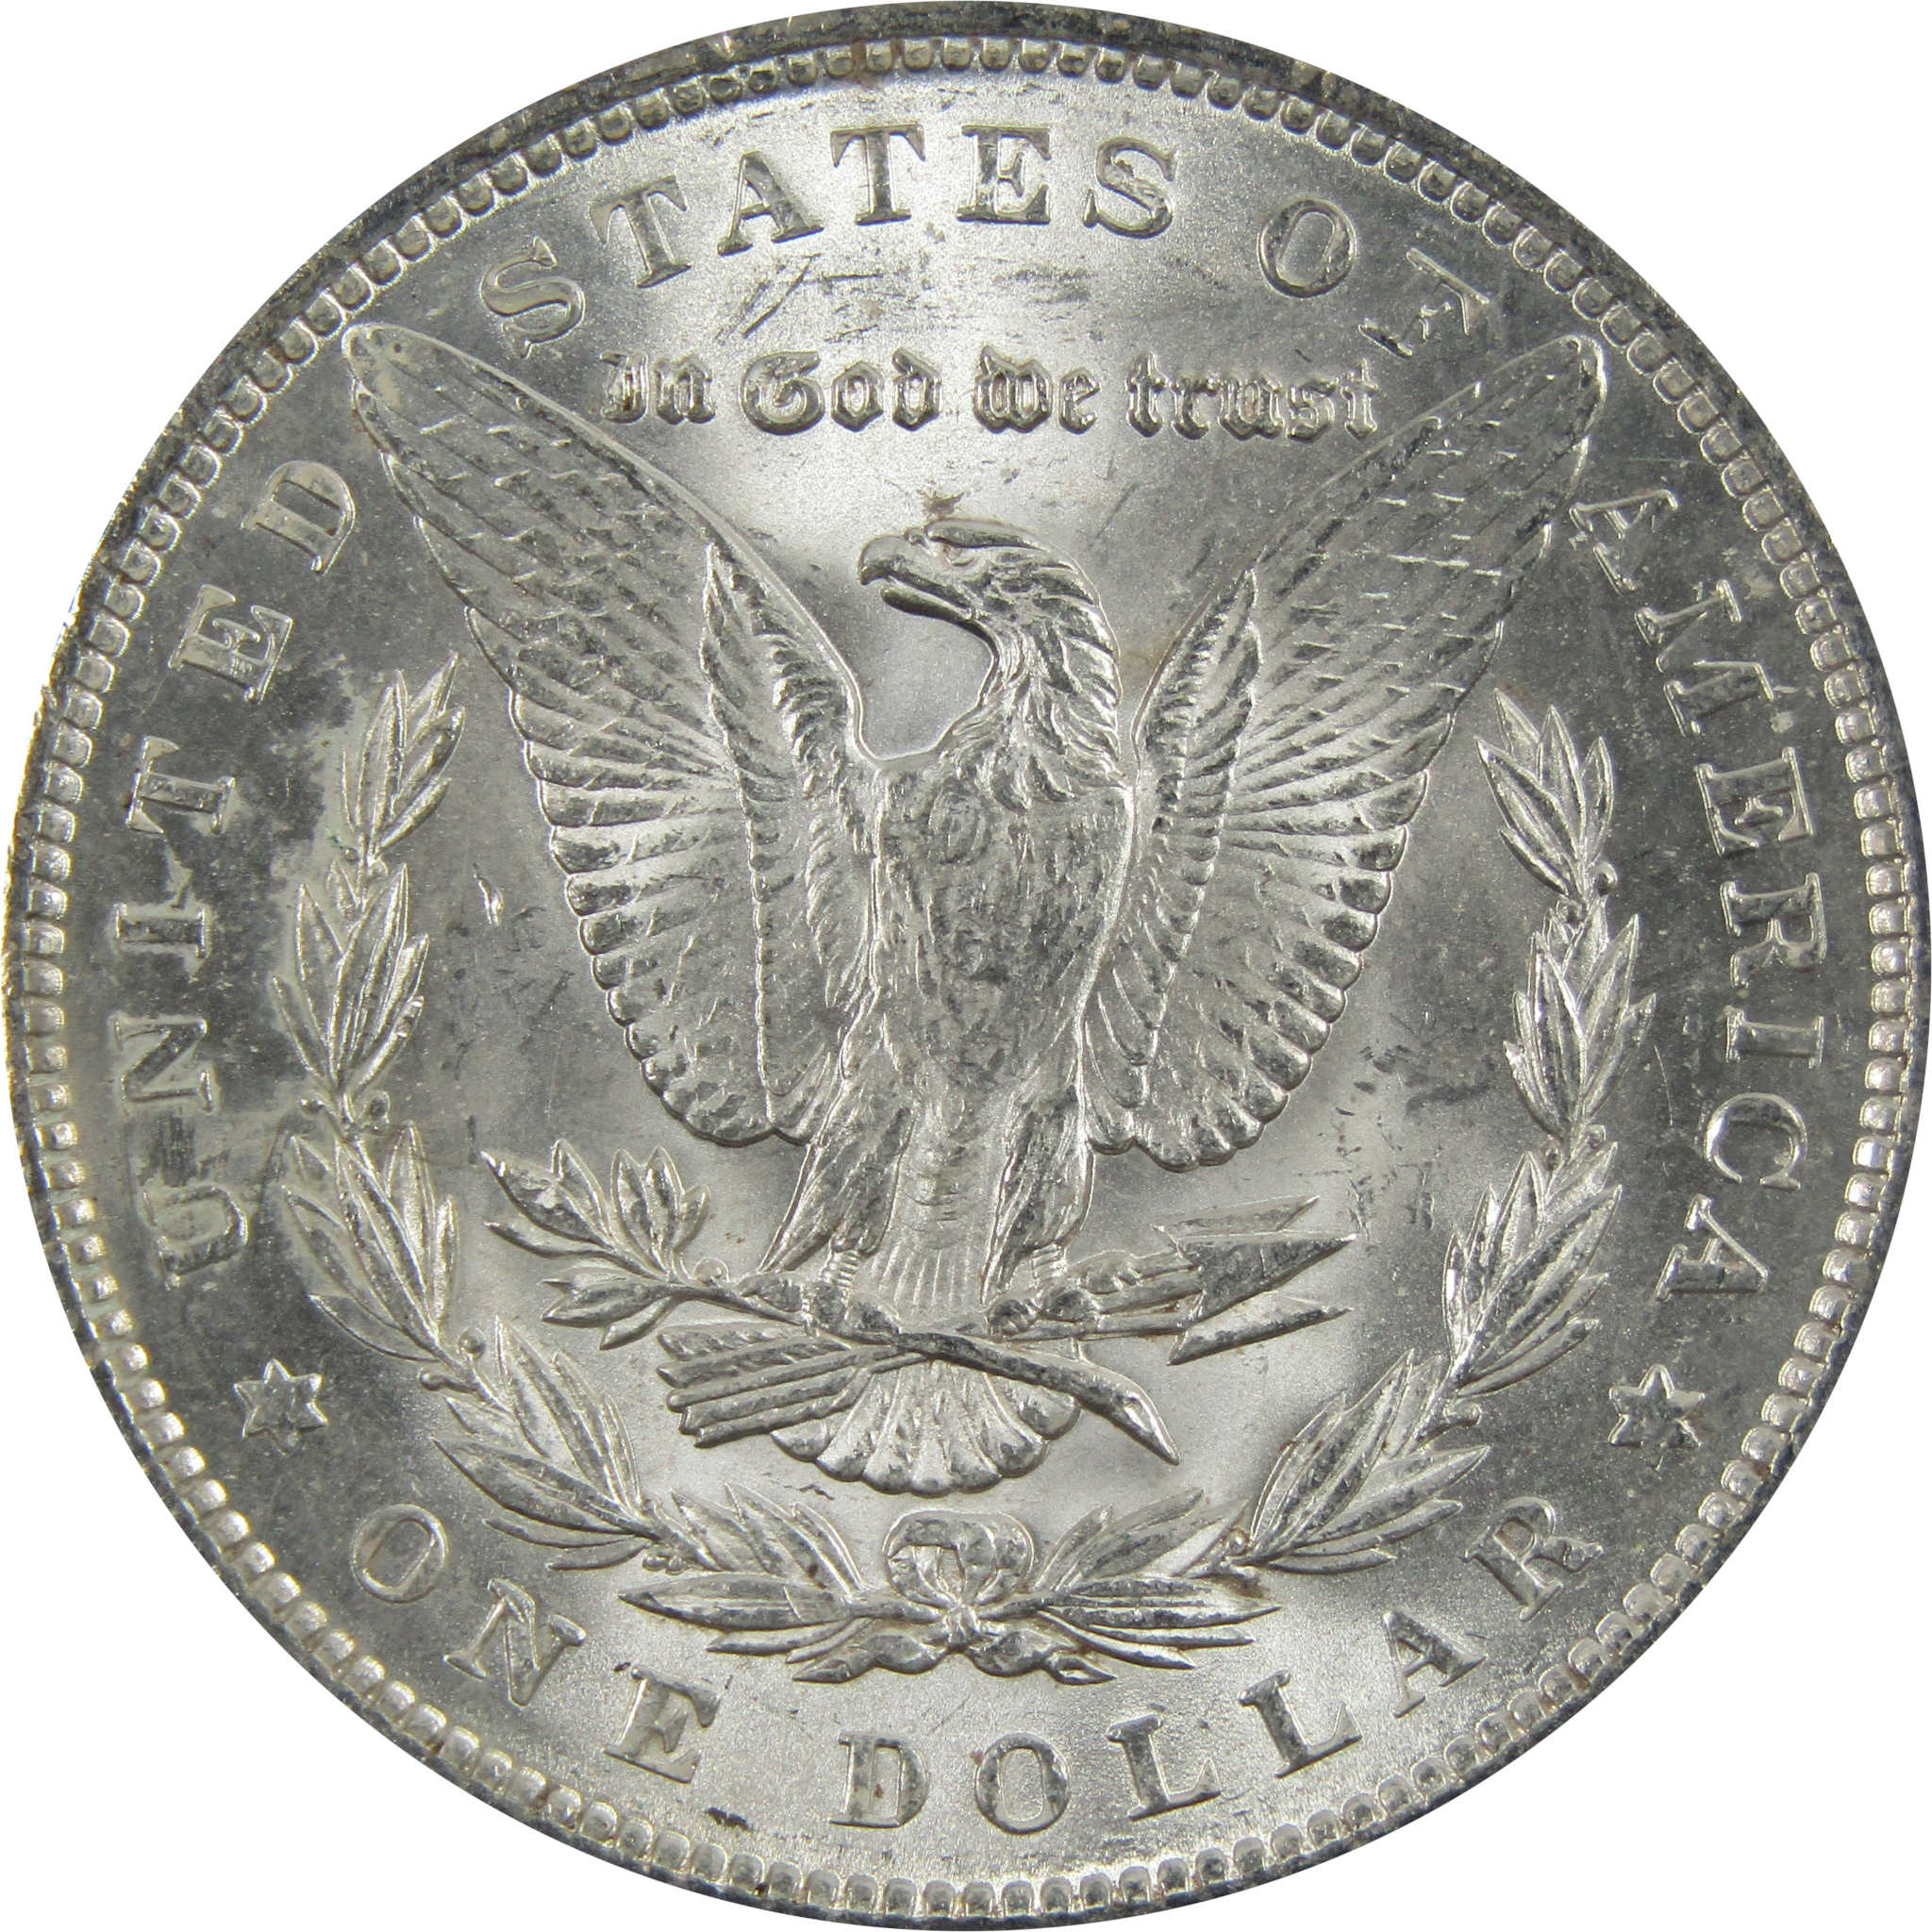 1890 Morgan Dollar BU Uncirculated 90% Silver $1 Coin SKU:I5136 - Morgan coin - Morgan silver dollar - Morgan silver dollar for sale - Profile Coins &amp; Collectibles